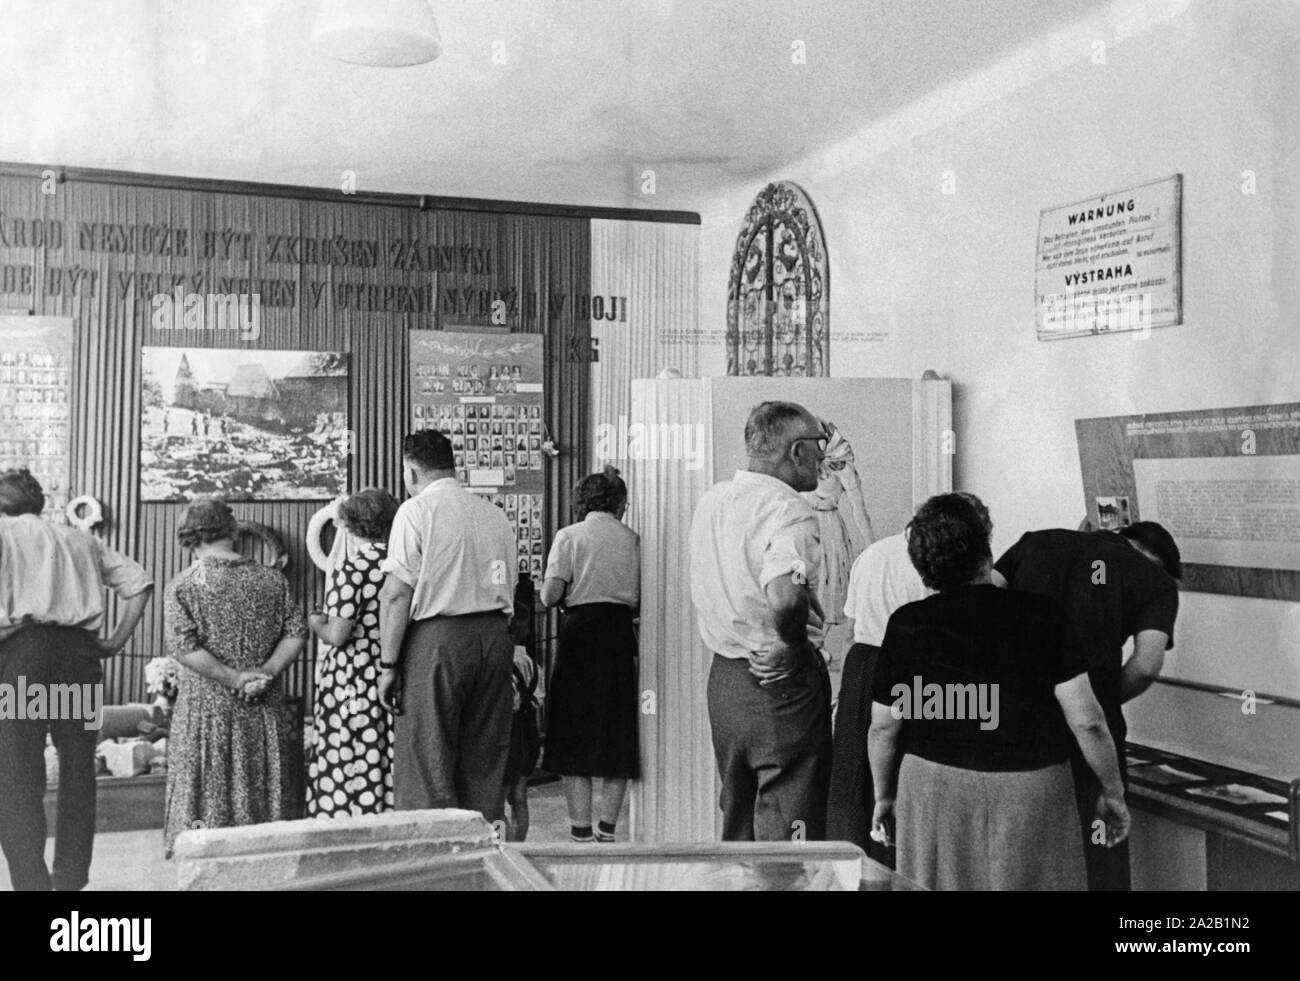 Besucher im Museum der Gedenkstätte Lidice betrachten die Exponate. Das Dorf Lidice wurde im Juni 1942 zerstört und die meisten der Bevölkerung ermordet oder deportiert (Undatiertes Foto). Stockfoto